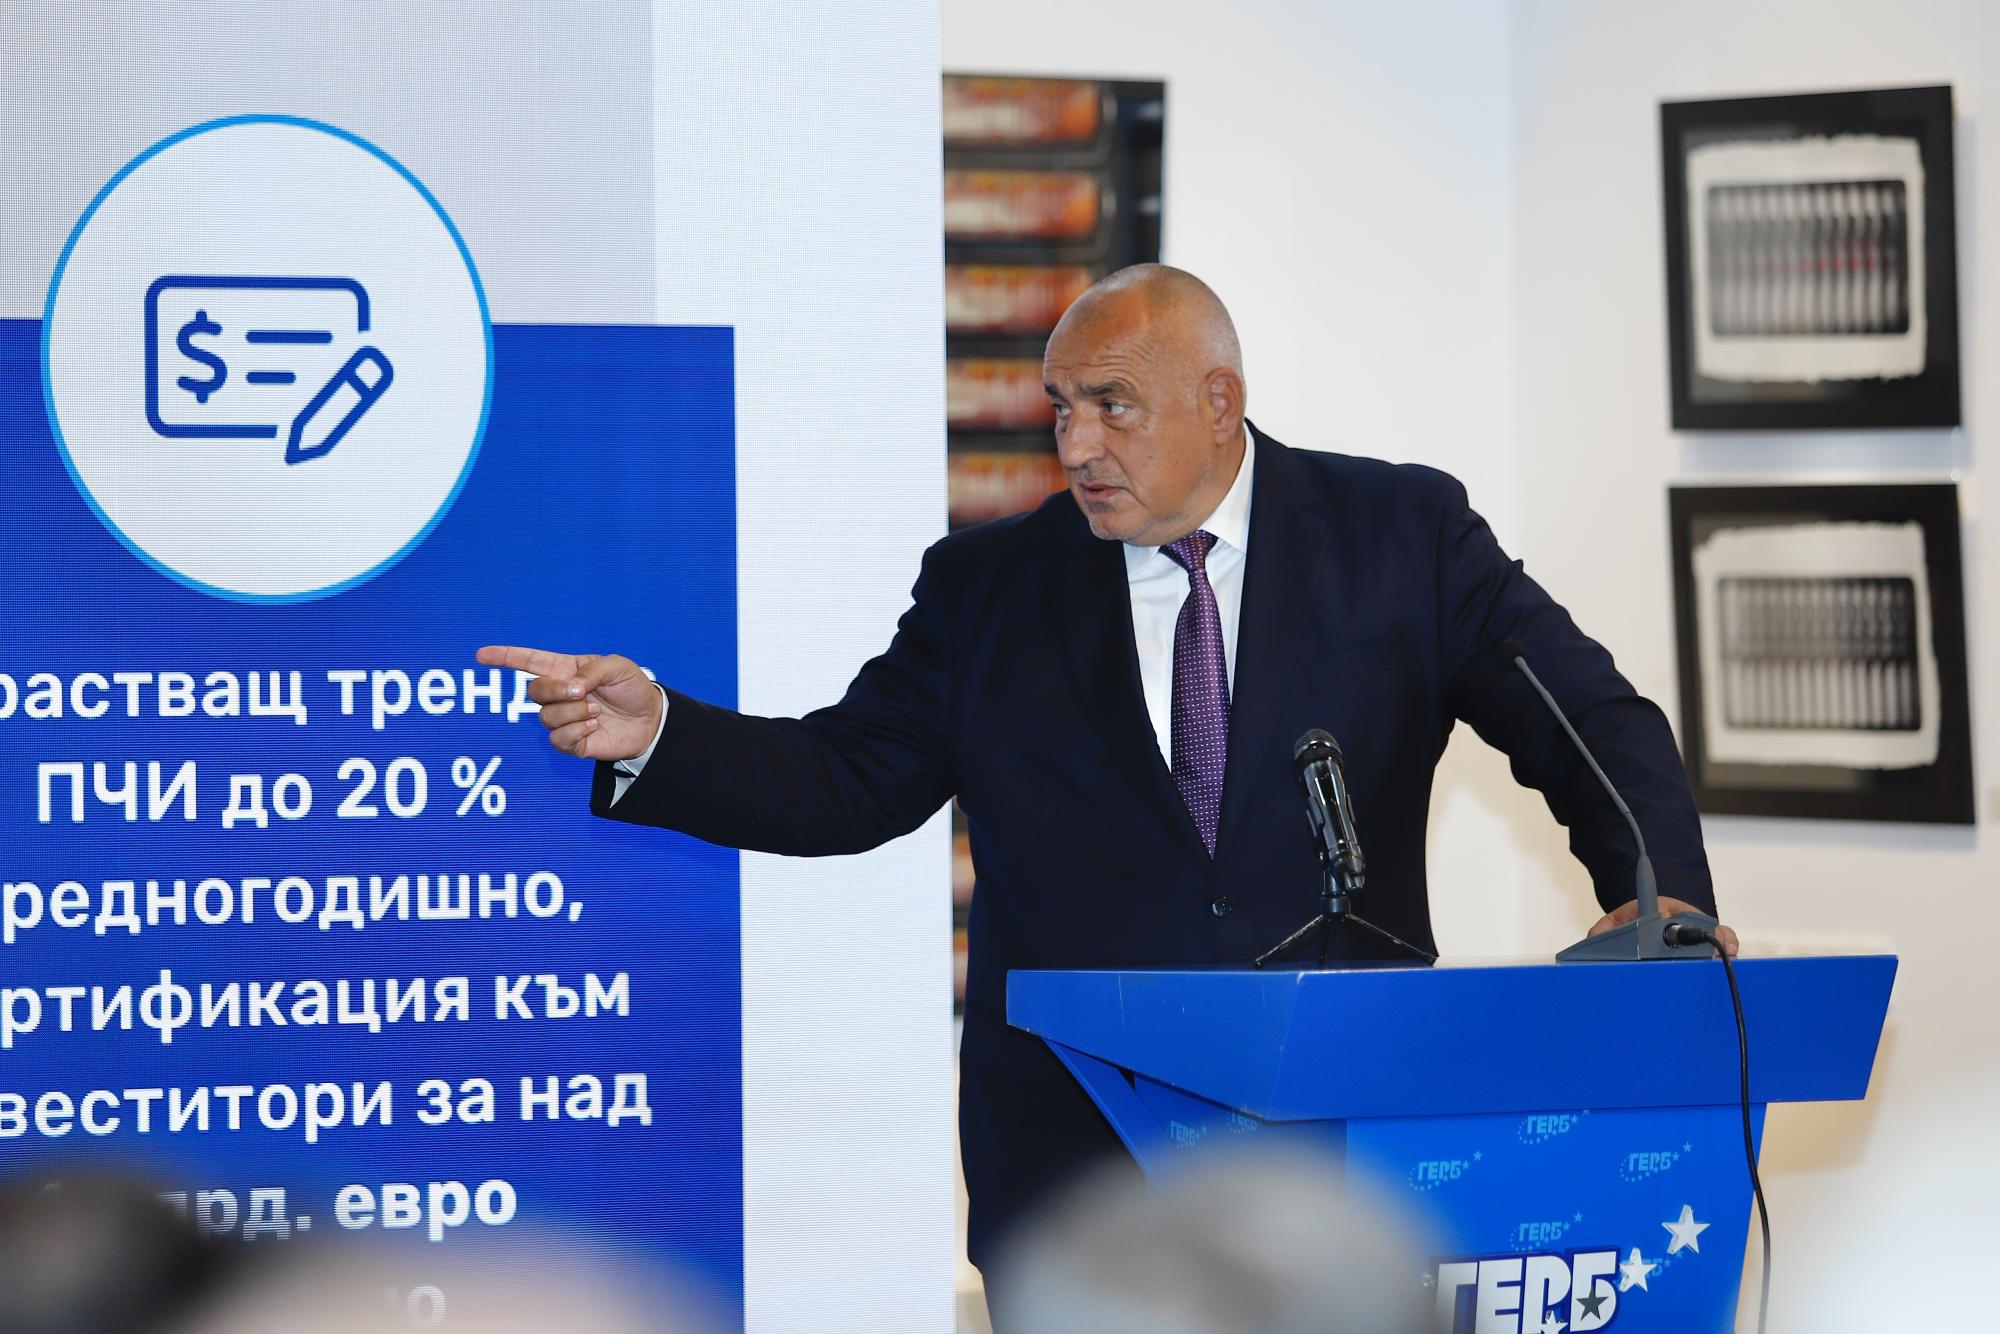 Бойко Борисов: Готов съм на разговори с всички партии